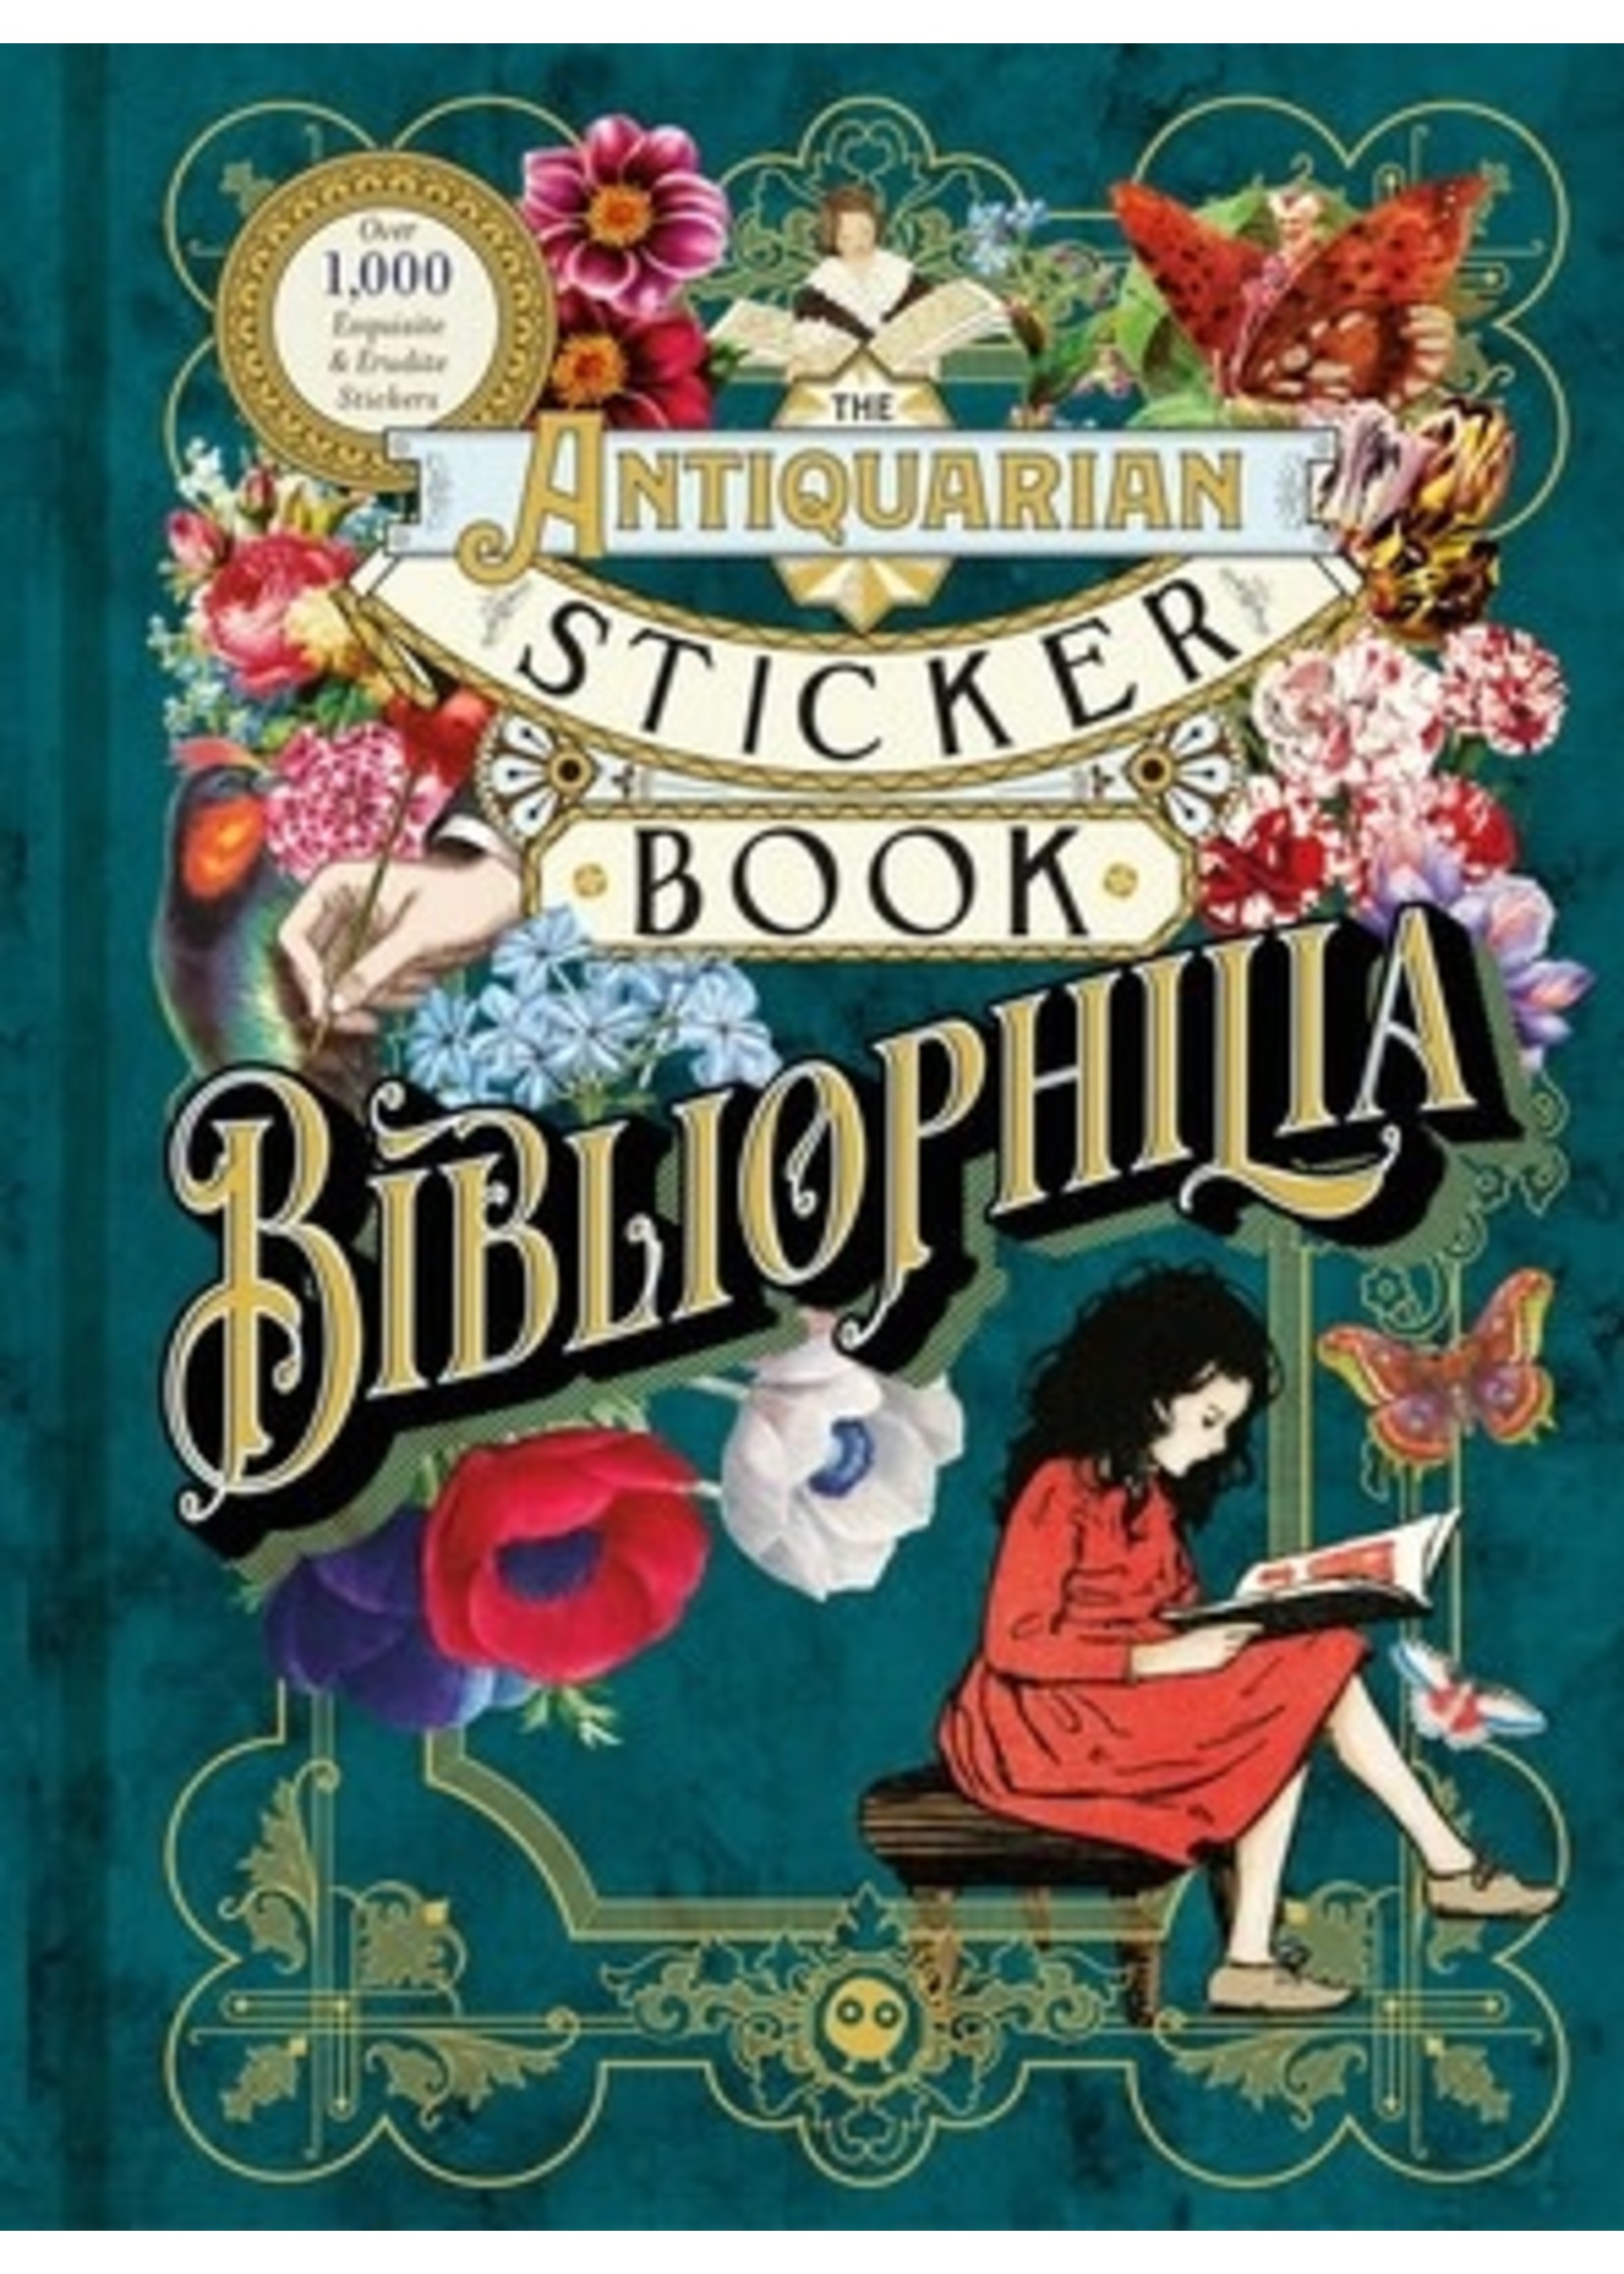 The Antiquarian Sticker Book: Bibliophilia by Odd Dot